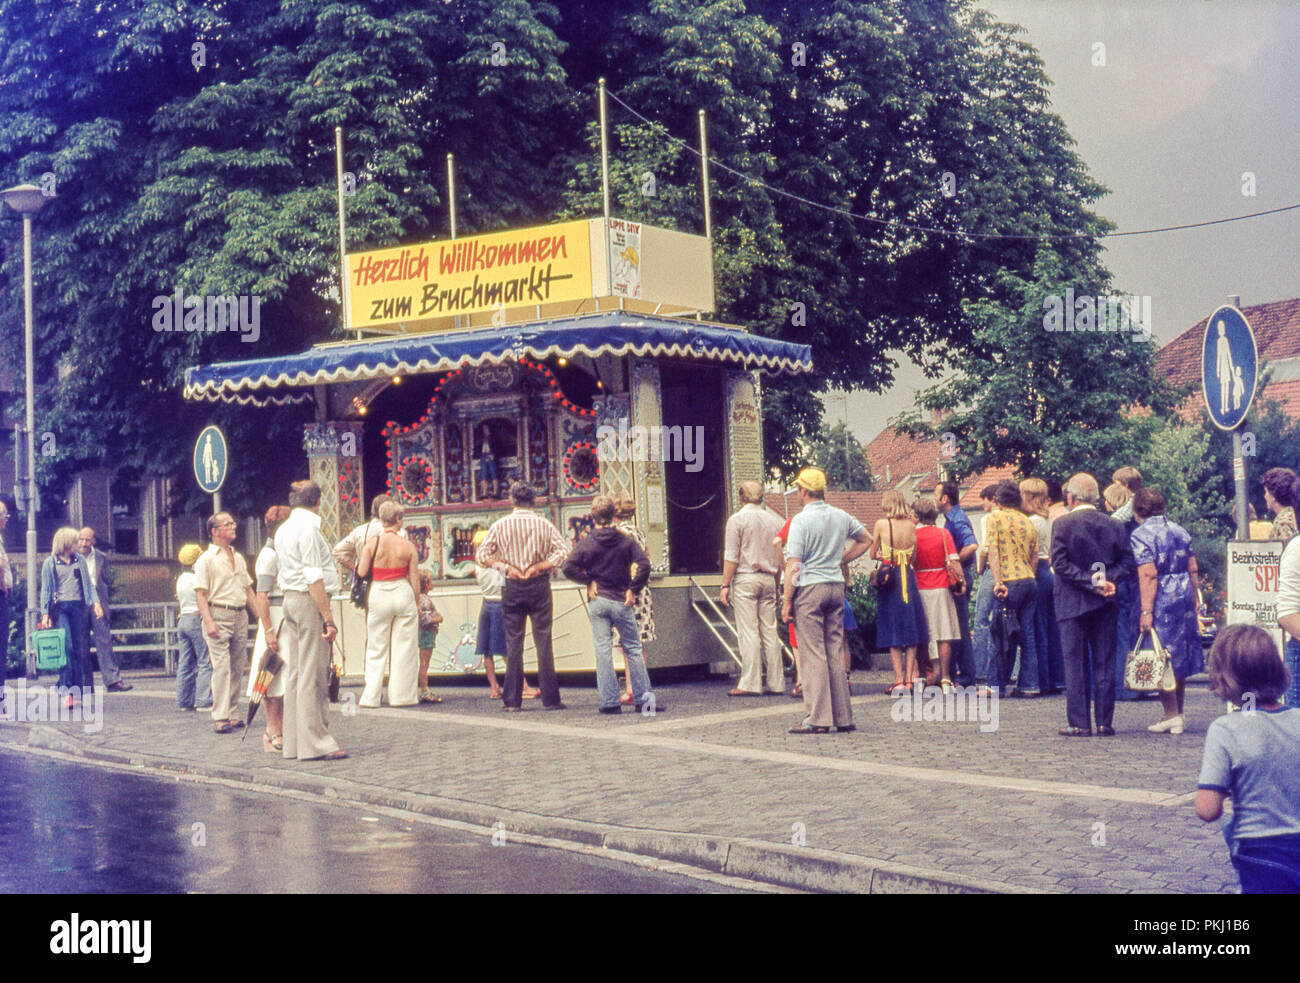 Lemgo Bruchmarkt en la década de los 70's. Archivo original imagen tomada en el momento en 35m, película diapositiva de color. Foto de stock